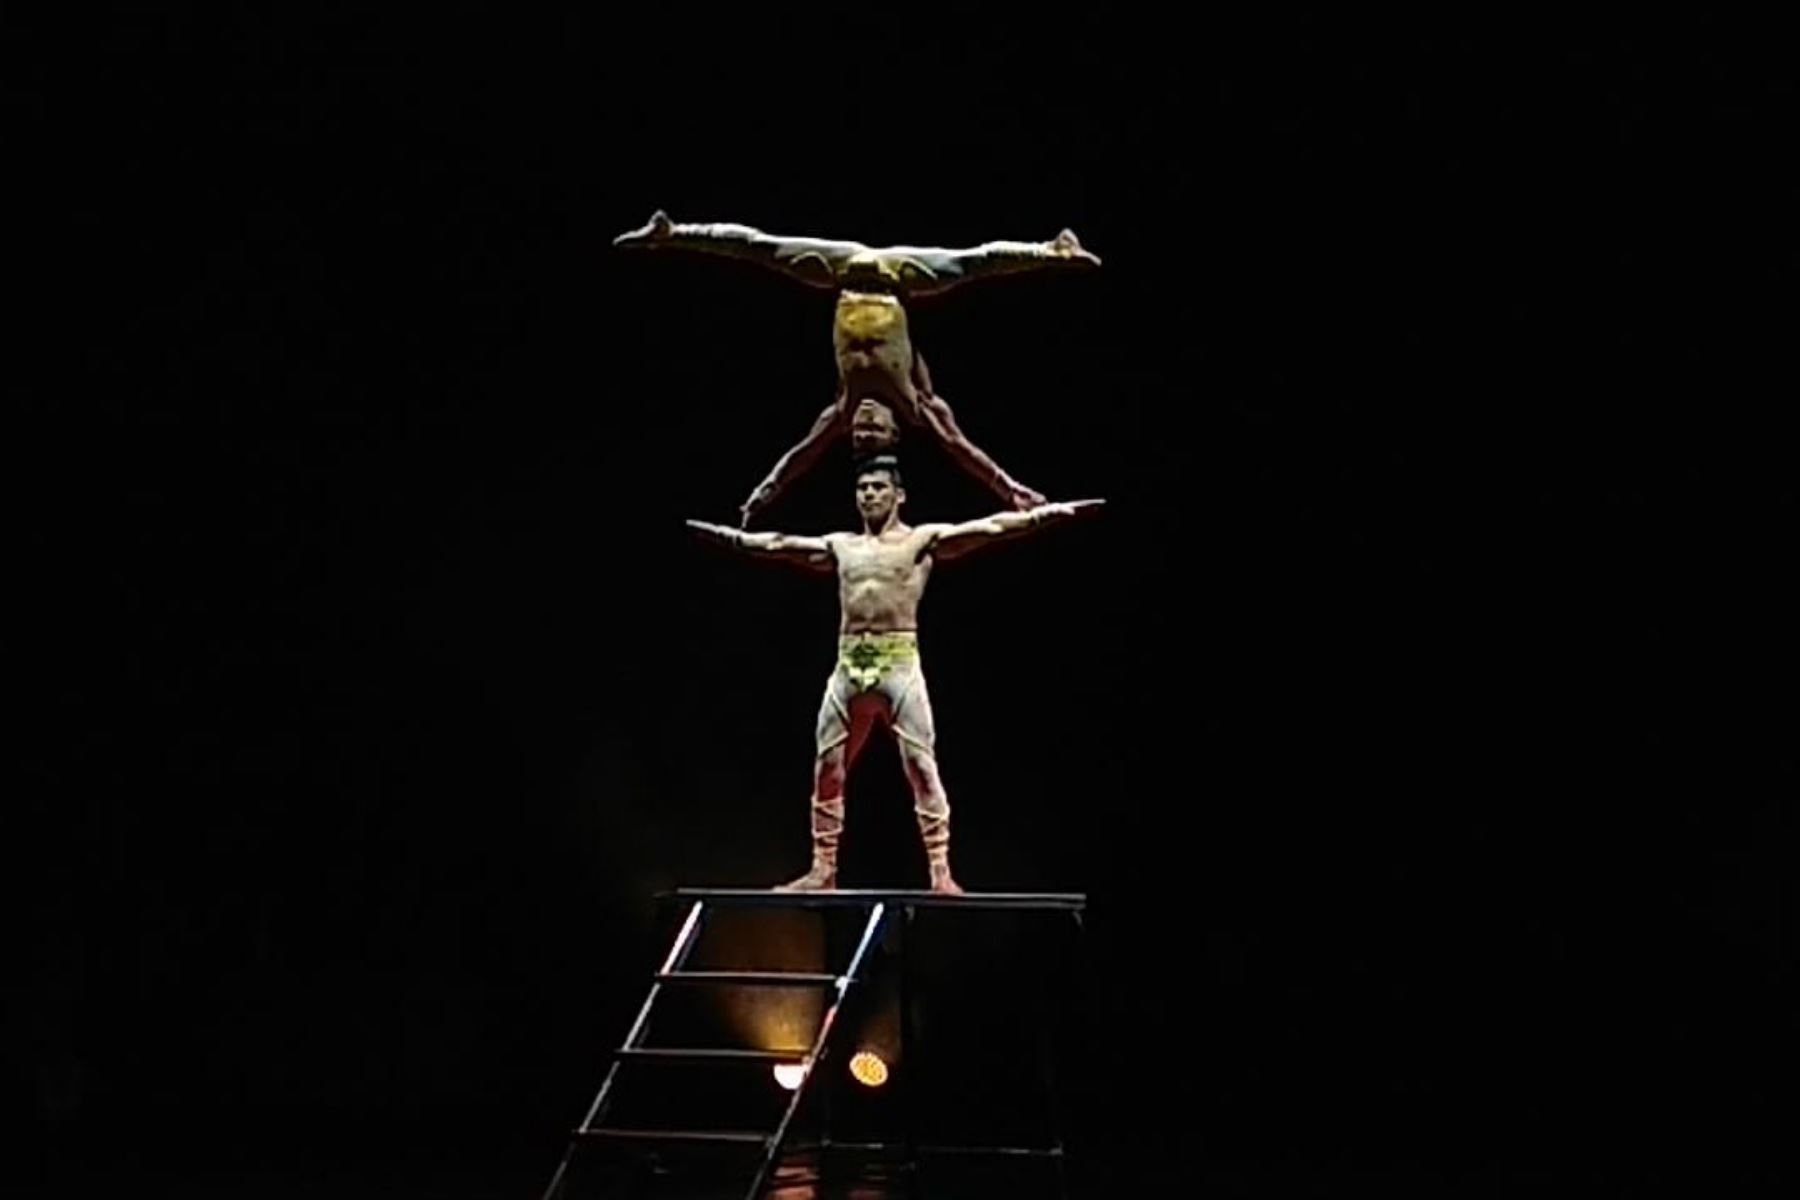 Los acróbatas peruanos, conocidos como el Dúo Vitalys, obtuvo el segundo lugar del I Festival Iberoamericano de Circo (FIRCO), realizados en Madrid, España.